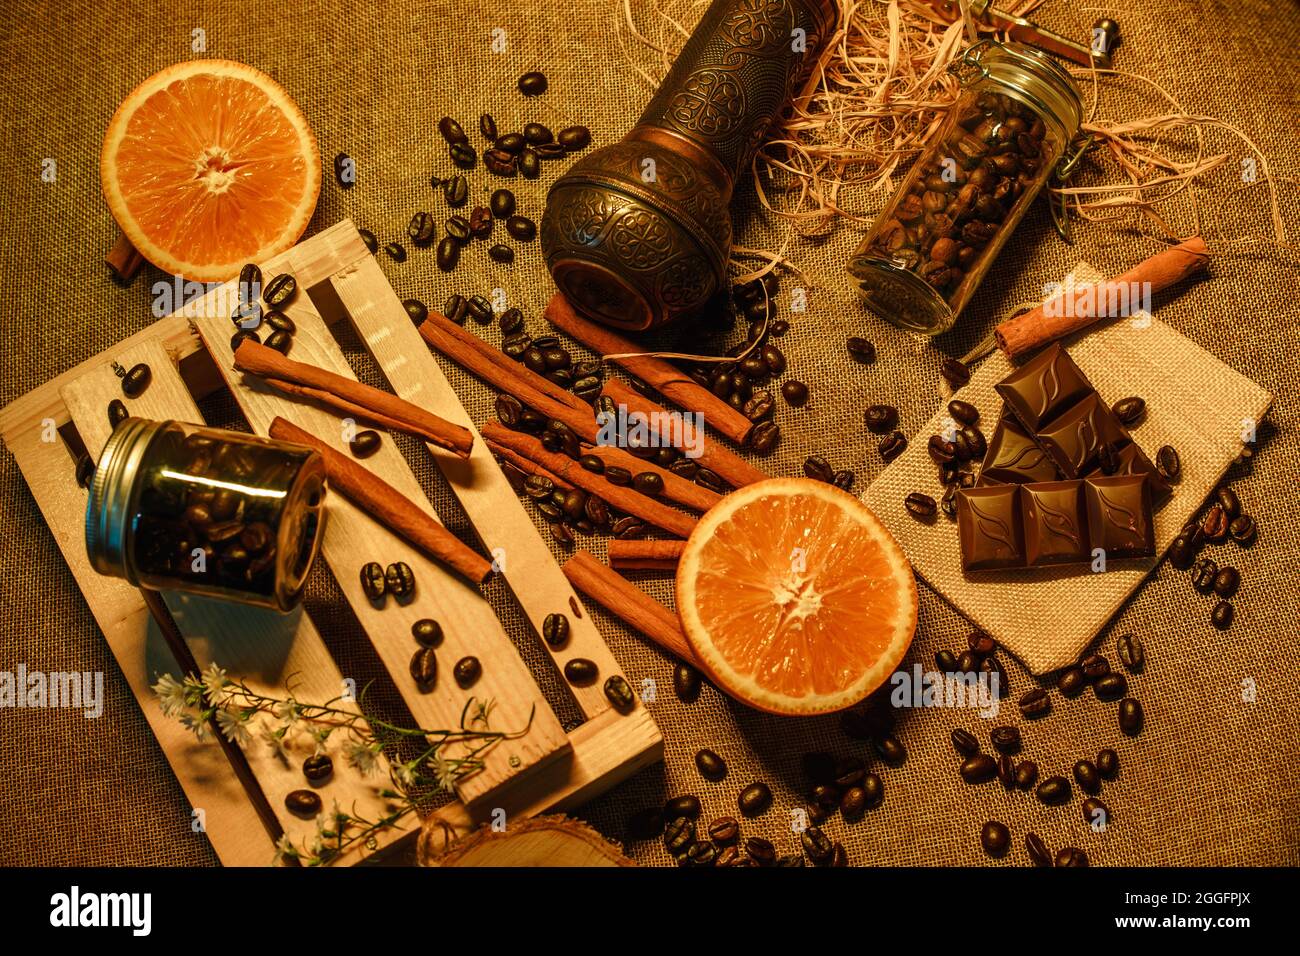 Blick von oben auf Kaffeebohnen mit Orange, Schokolade, Kaffeemühle und Holzkiste. Produktfotografie von Kaffeebohnen Stockfoto